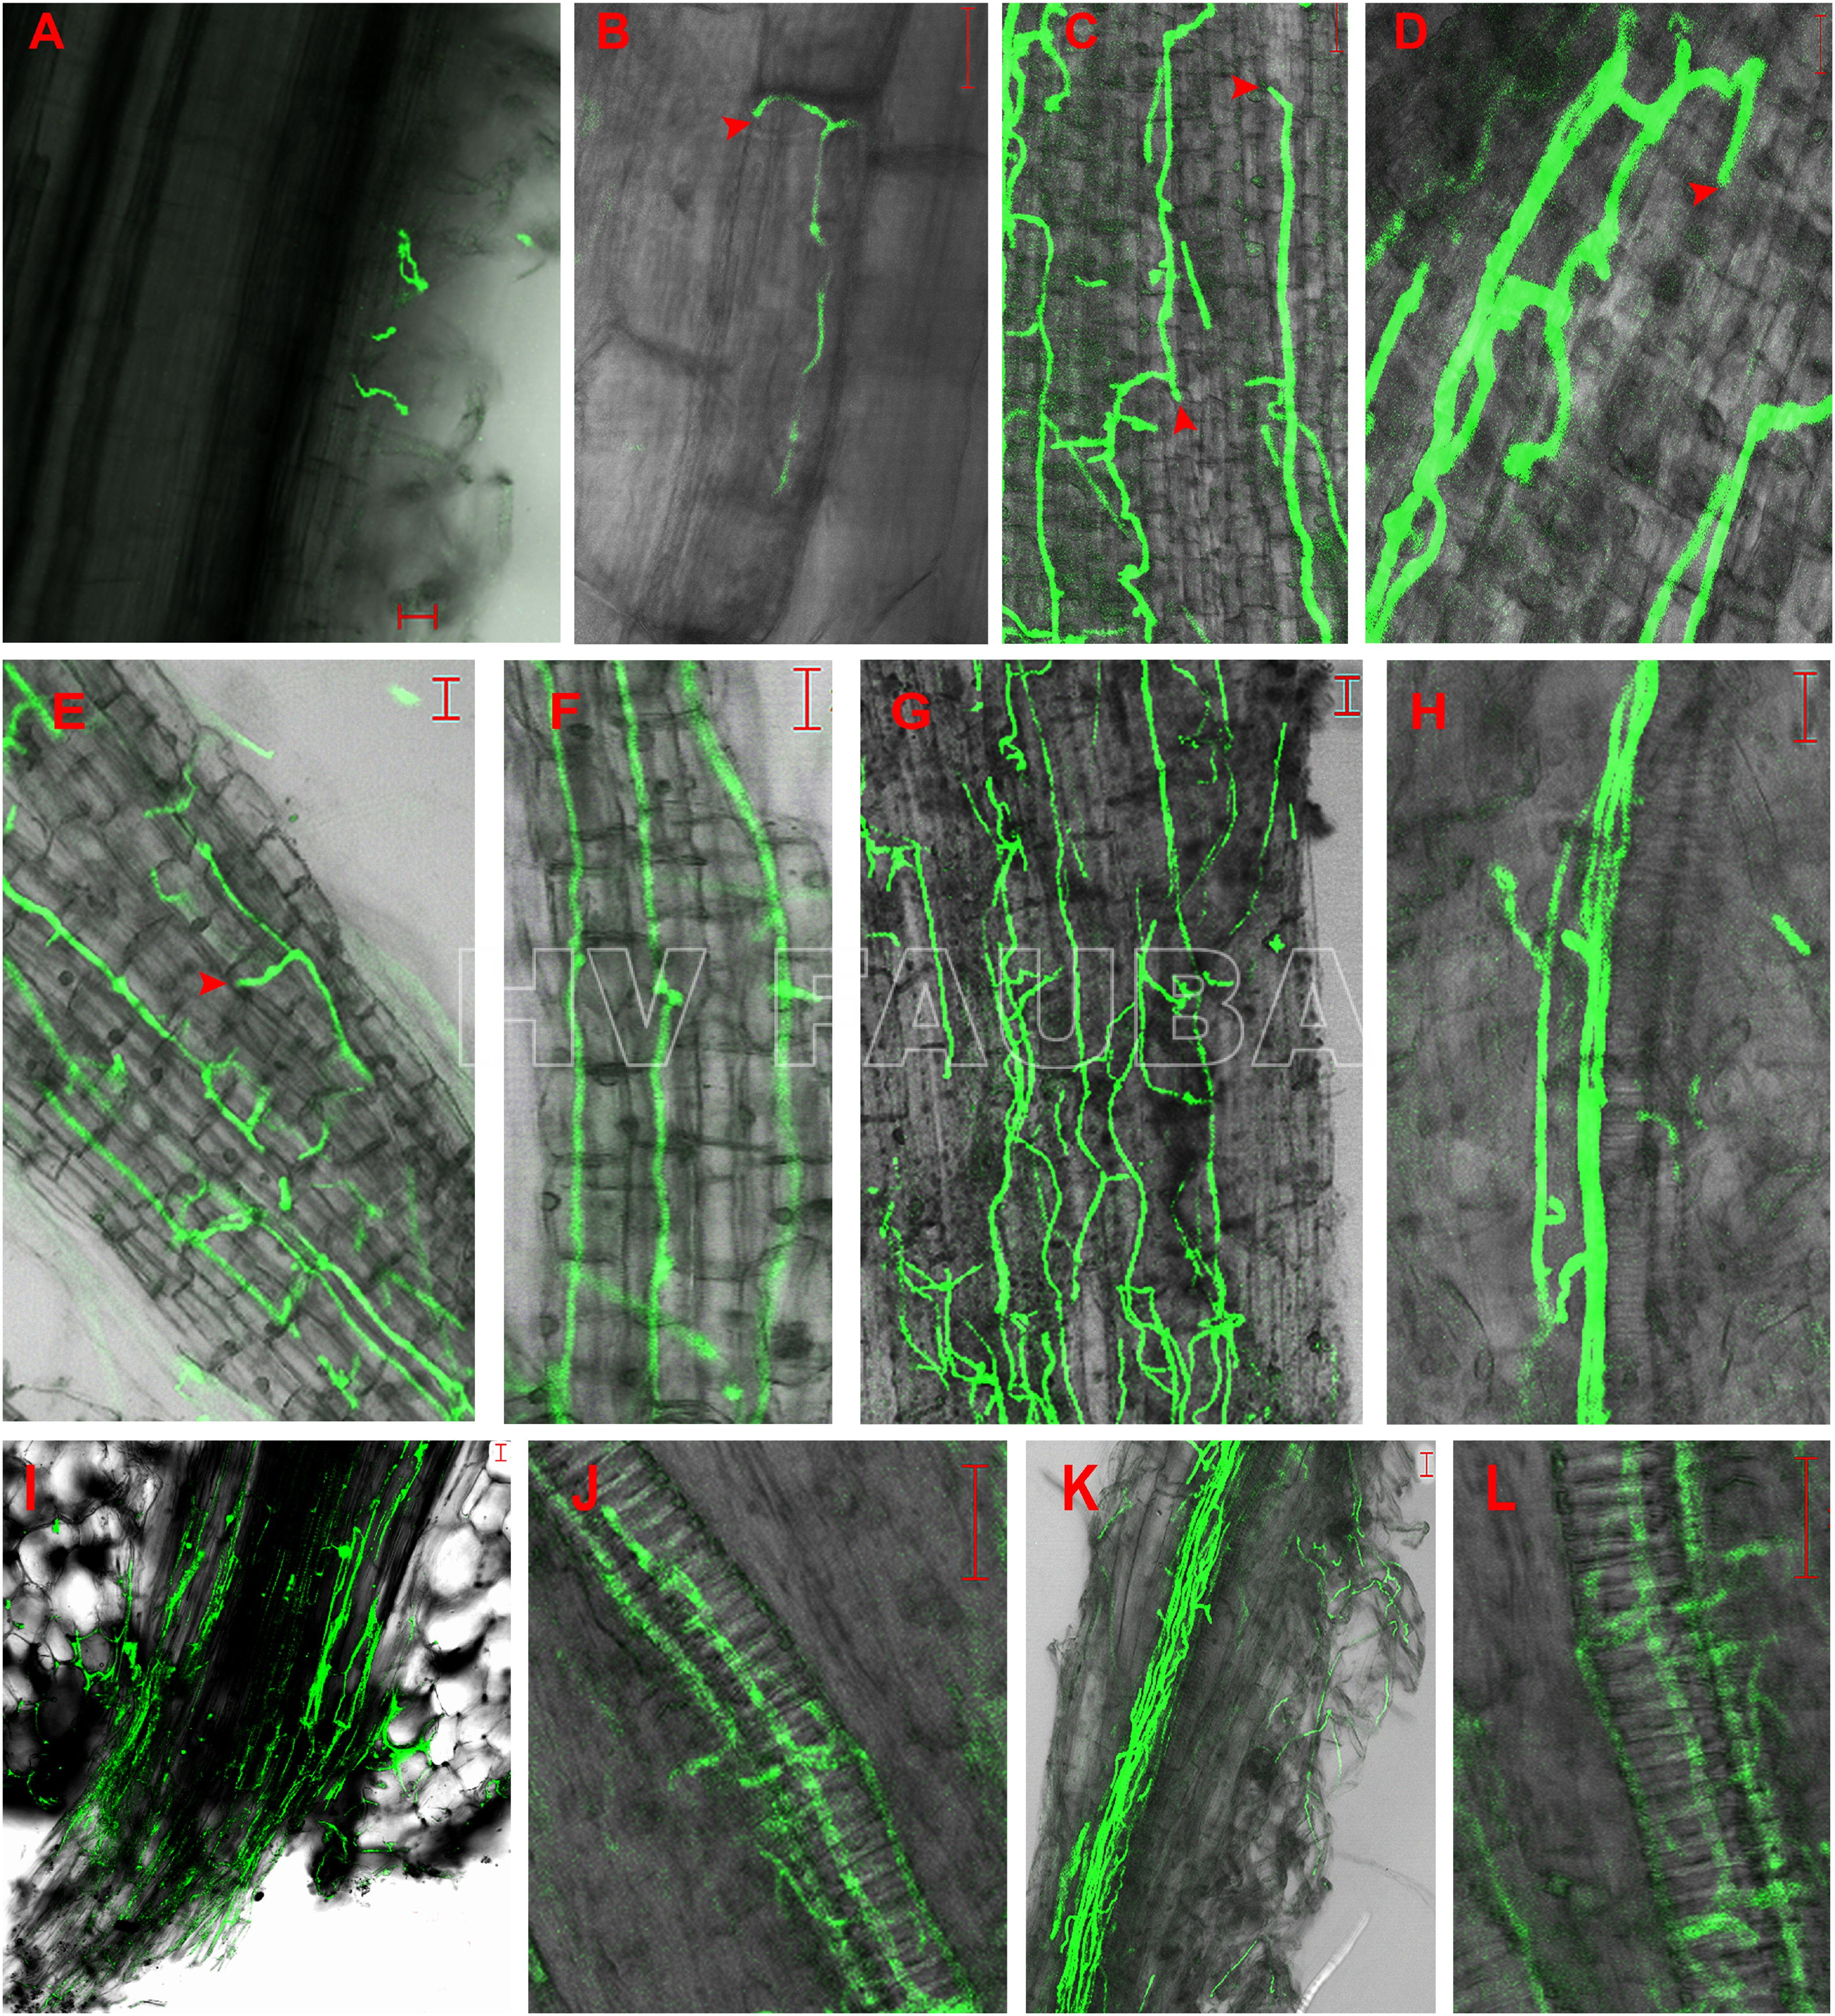 Germinación de conidios de un aislado de Verticillium dahliae  expresando la proteína verde fluorescente (GFP) y colonización del sistema radicular de plántulas de girasol desde 24 h hasta 7 días postinoculación. A: Conidios germinados en pelos radicales 24 h postinoculación (hpi). B: Micelio extendido a lo largo de la unión longitudinal entre las células epidérmicas de la raíz en la zona de elongación de la raíz lateral 48 hpi. C y D: el micelio continuó alargándose a lo largo del eje longitudinal de las células epidérmicas de la raíz y el micelio penetró directamente en la célula epidérmica adyacente sin formar ninguna estructura de infección visible, como apresorios, respectivamente, 72 hpi. E y F: redes de micelio formadas en la superficie de las raíces laterales 96 hpi. G: Micelio formado desordenadamente en la superficie de la raíz primaria 96 hpi. H: Sin colonización de los vasos vasculares de la raíz lateral 96 hpi. I: Colonización masiva de micelio en el sitio de unión de la raíz lateral y la raíz primaria 96 hpi. J: Micelio en vaso vascular de la raíz lateral 5 días después de la inoculación (dpi). K: micelio extendido a lo largo del haz vascular de la raíz primaria 7 dpi. L: Desarrollo de V. dahliae en células vasculares de la raíz primaria 7 dpi. Análisis de imágenes capturadas mediante microscopía de barrido láser (LSM). Las flechas indican los sitios de penetración. Barras de escala = 20 µm. Autor: Zhang et al., 2018.